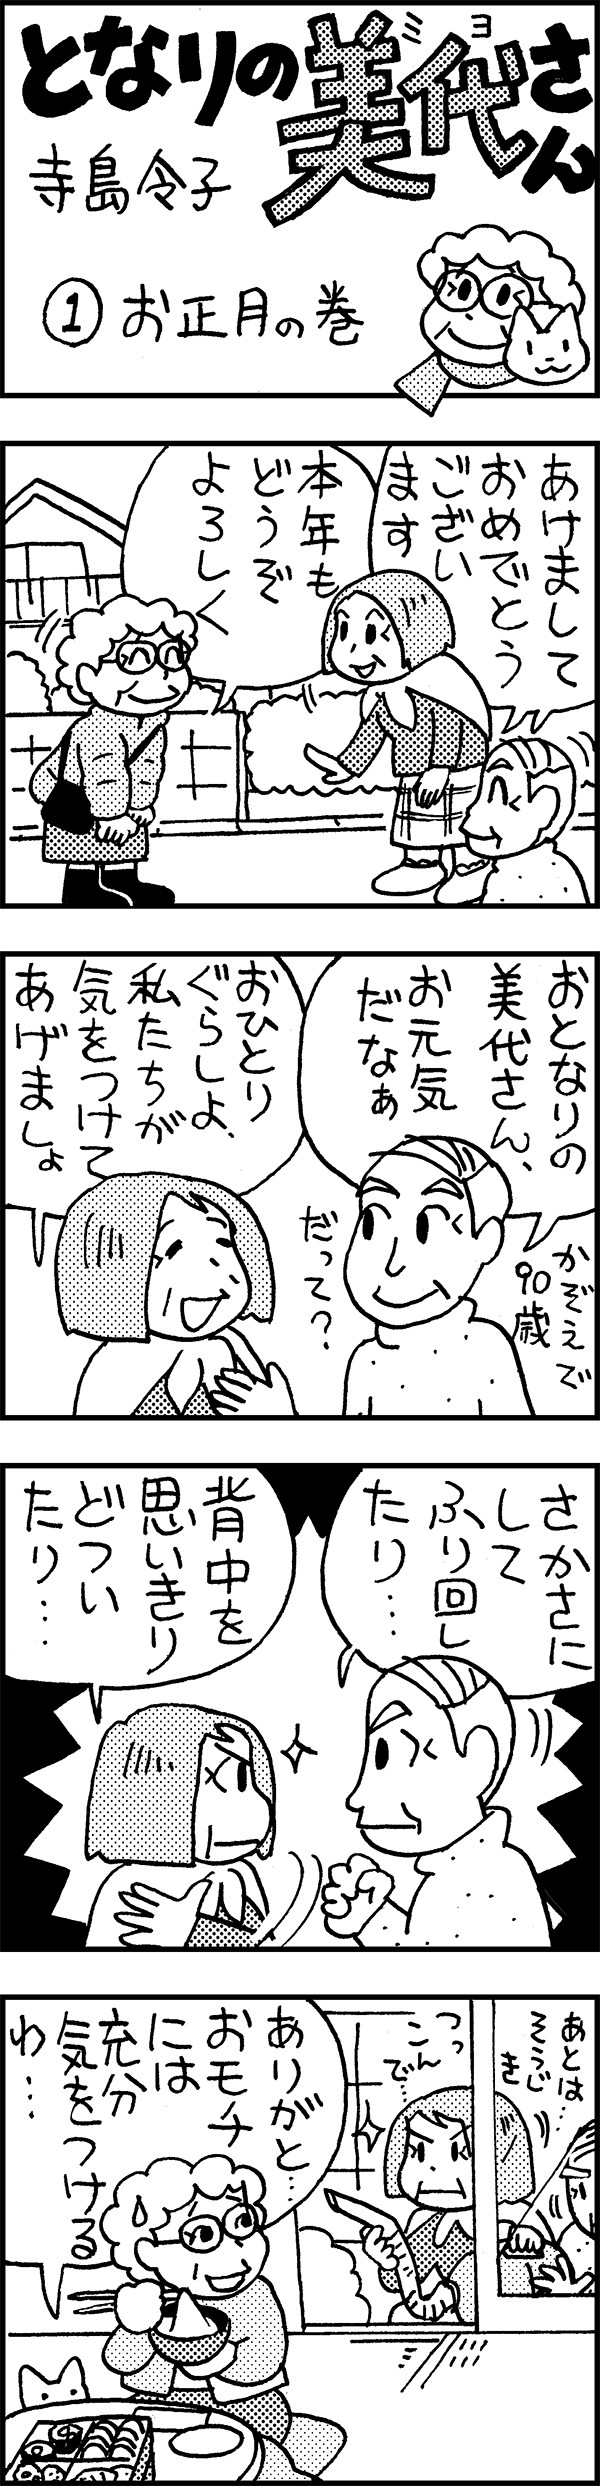 日本薬師堂会報誌掲載4コマ漫画 第1弾[画像1]